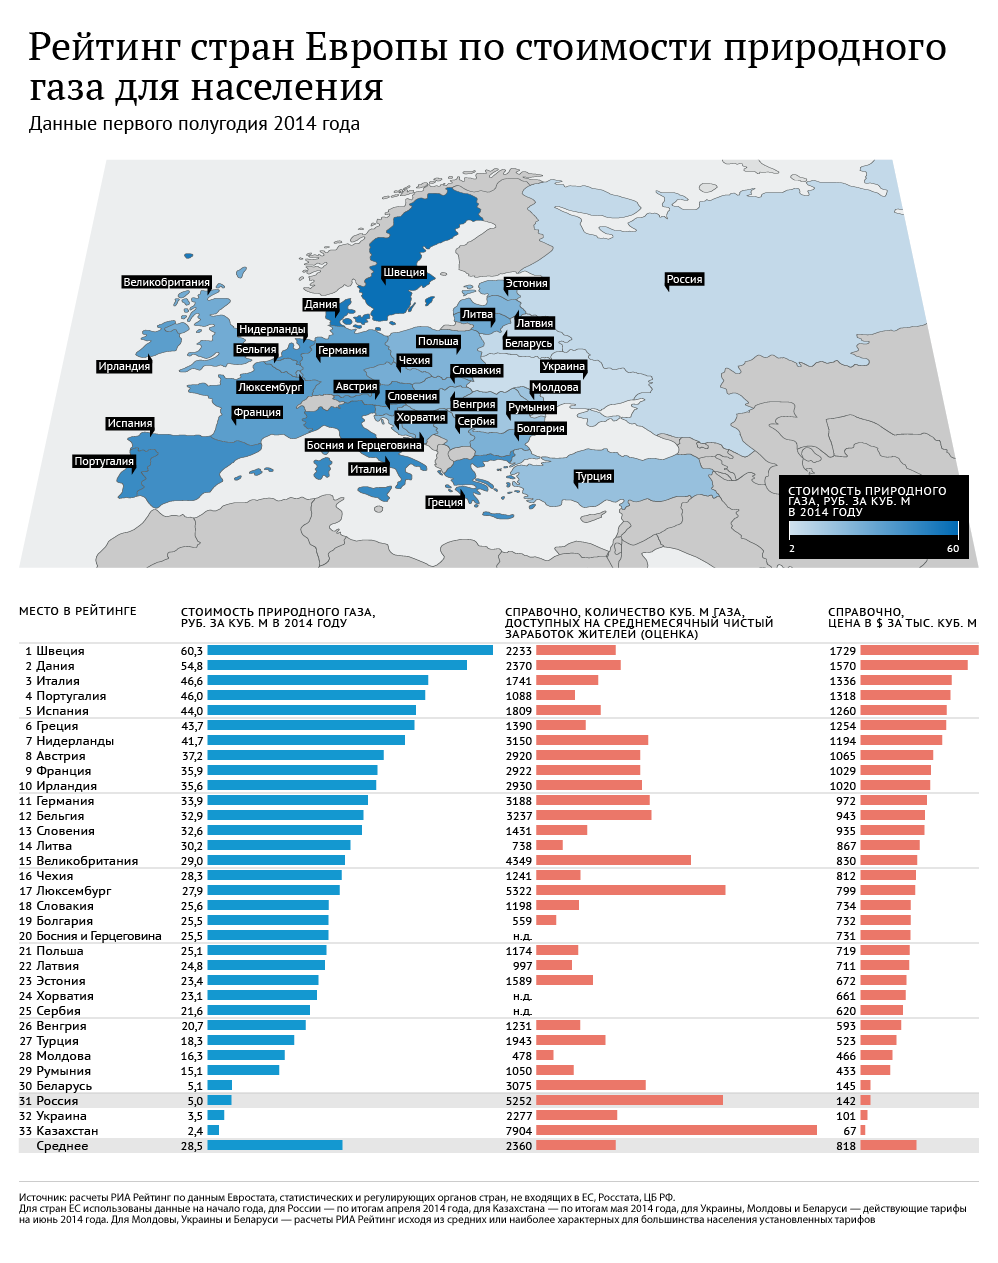 Низкие цены на газ в европе. ГАЗ В Европе за 1 куб. Рейтинг европейских стран по стоимости газа. Стоимость газа для европейских стран. Стоимость российского газа для стран Европы.